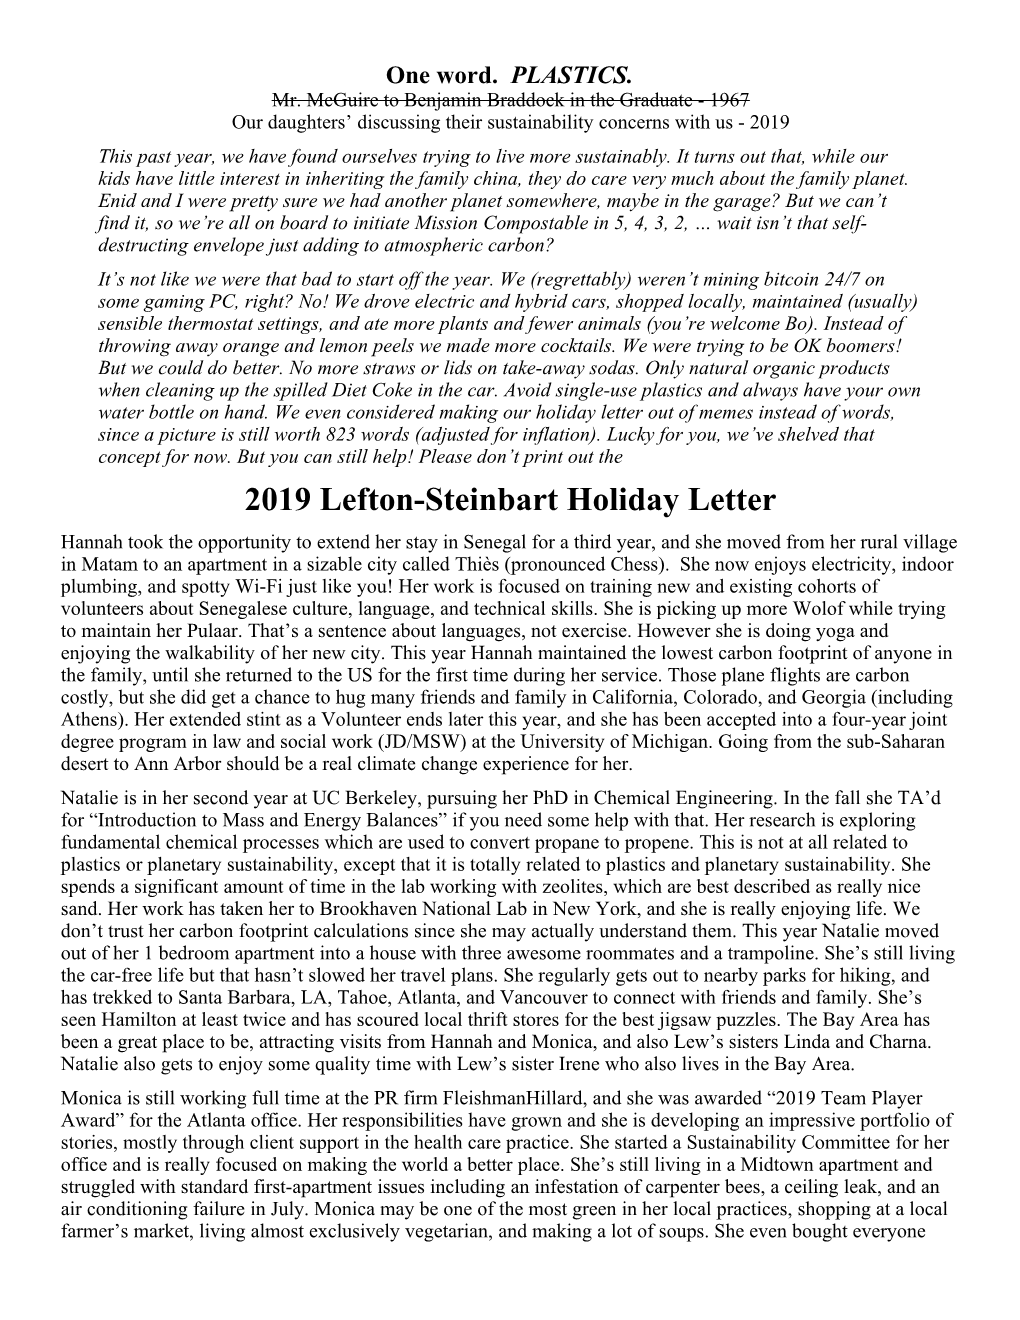 2019 Lefton-Steinbart Holiday Letter